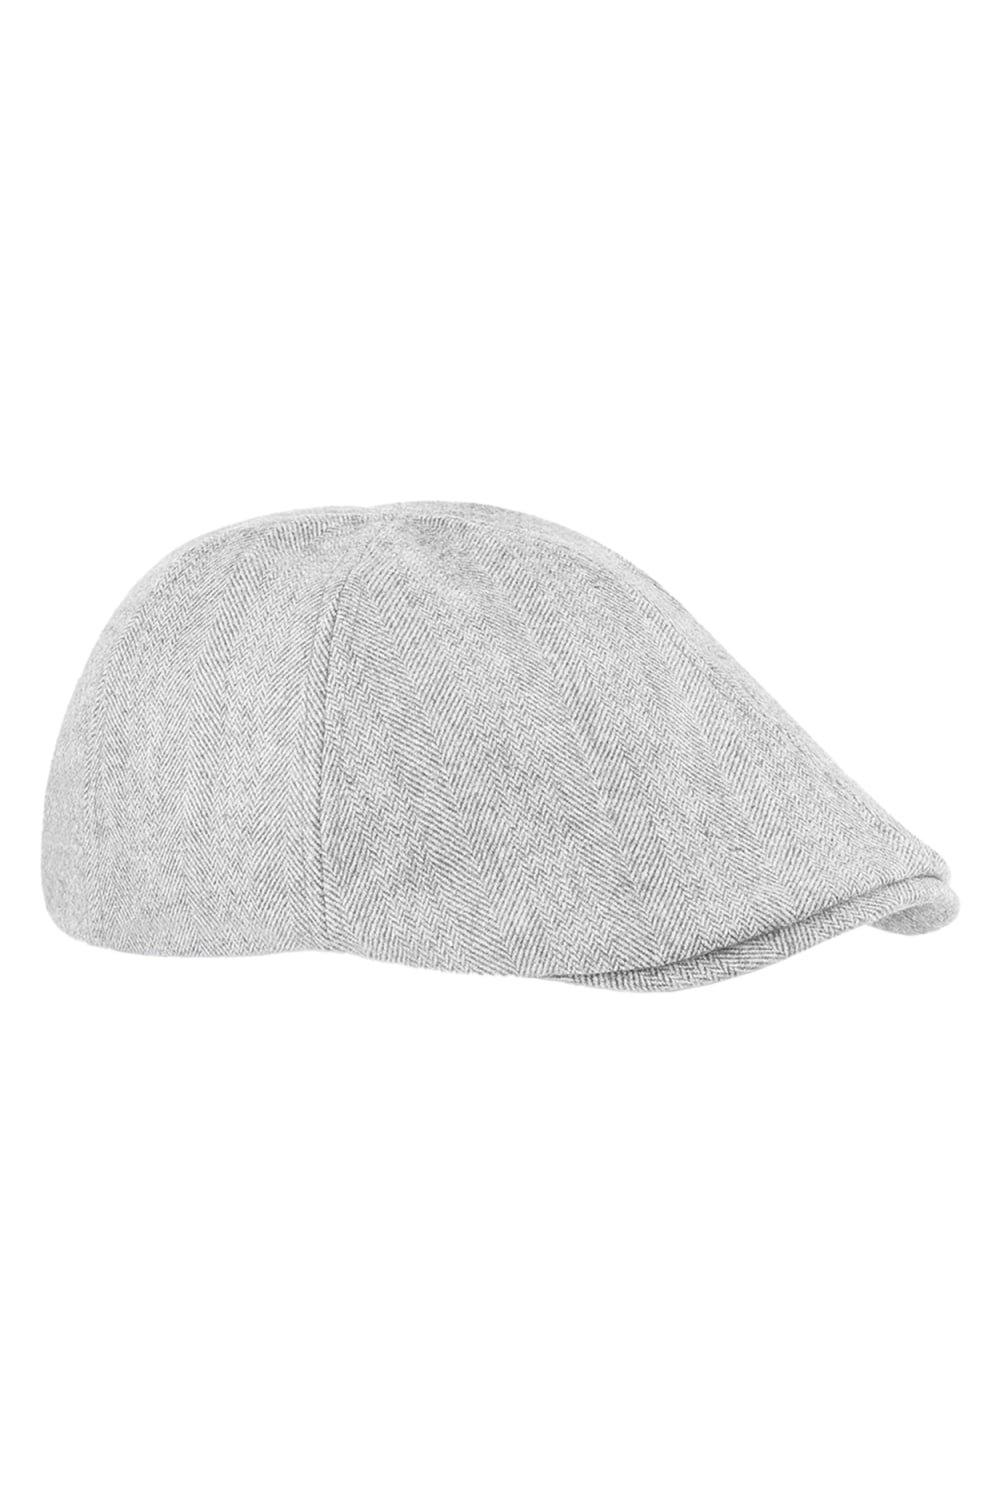 Beechfield Ivy Flat Cap / Headwear|light grey